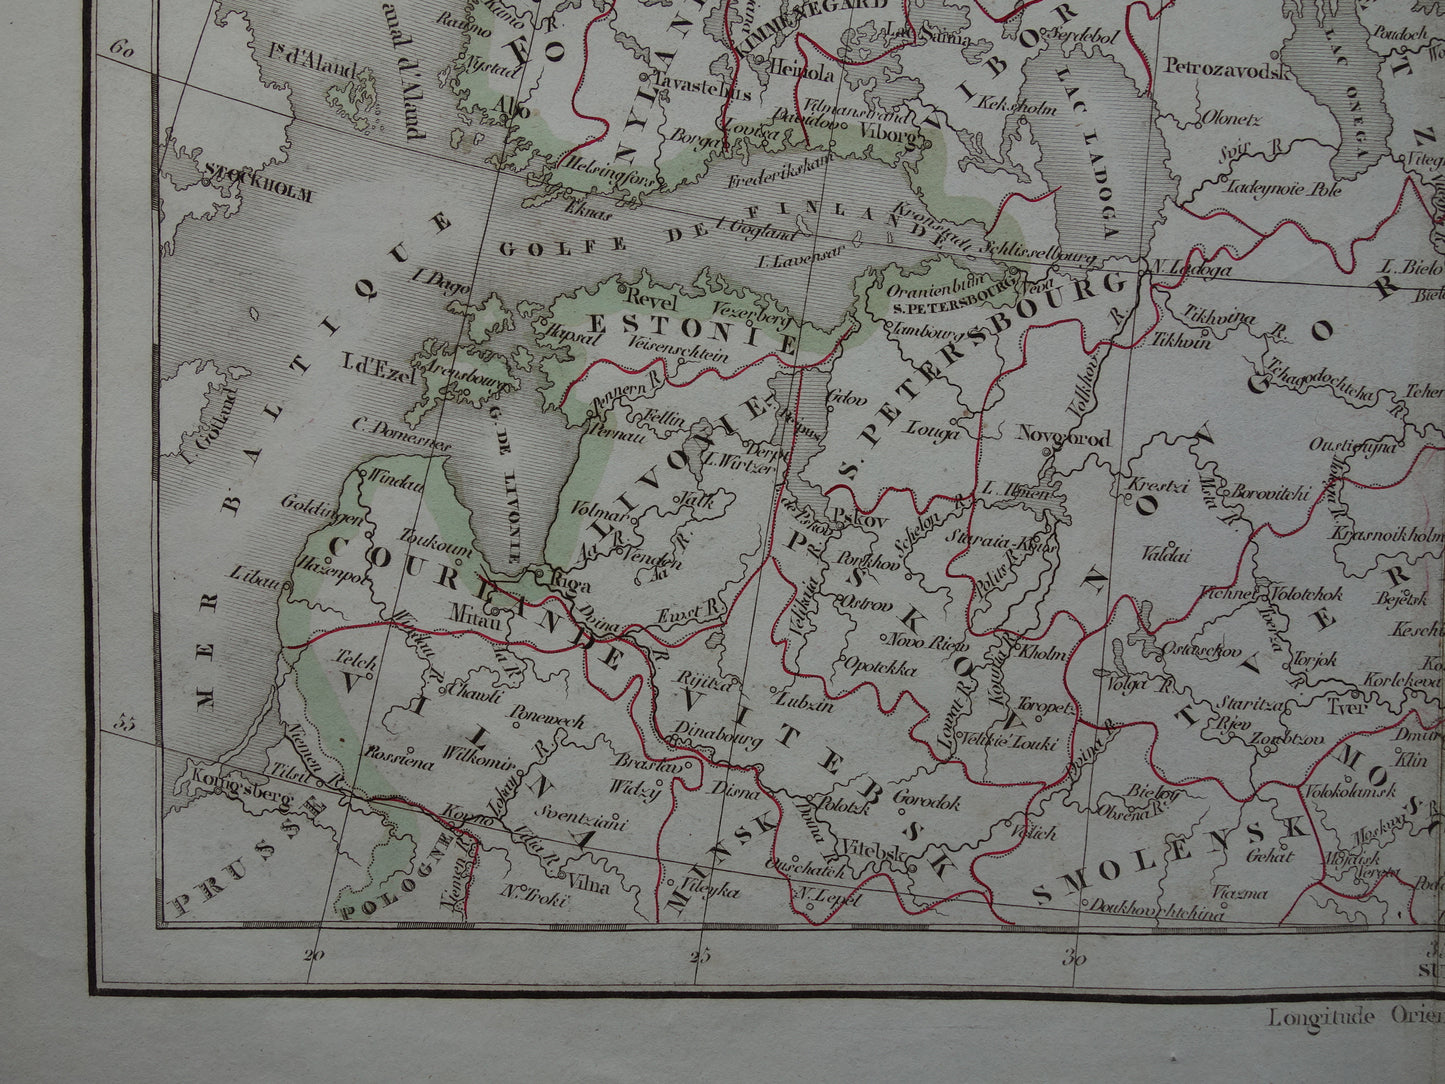 RUSLAND oude historische landkaart van Europees Rusland met Finland en Baltische Staten - originele antieke kaart 1832